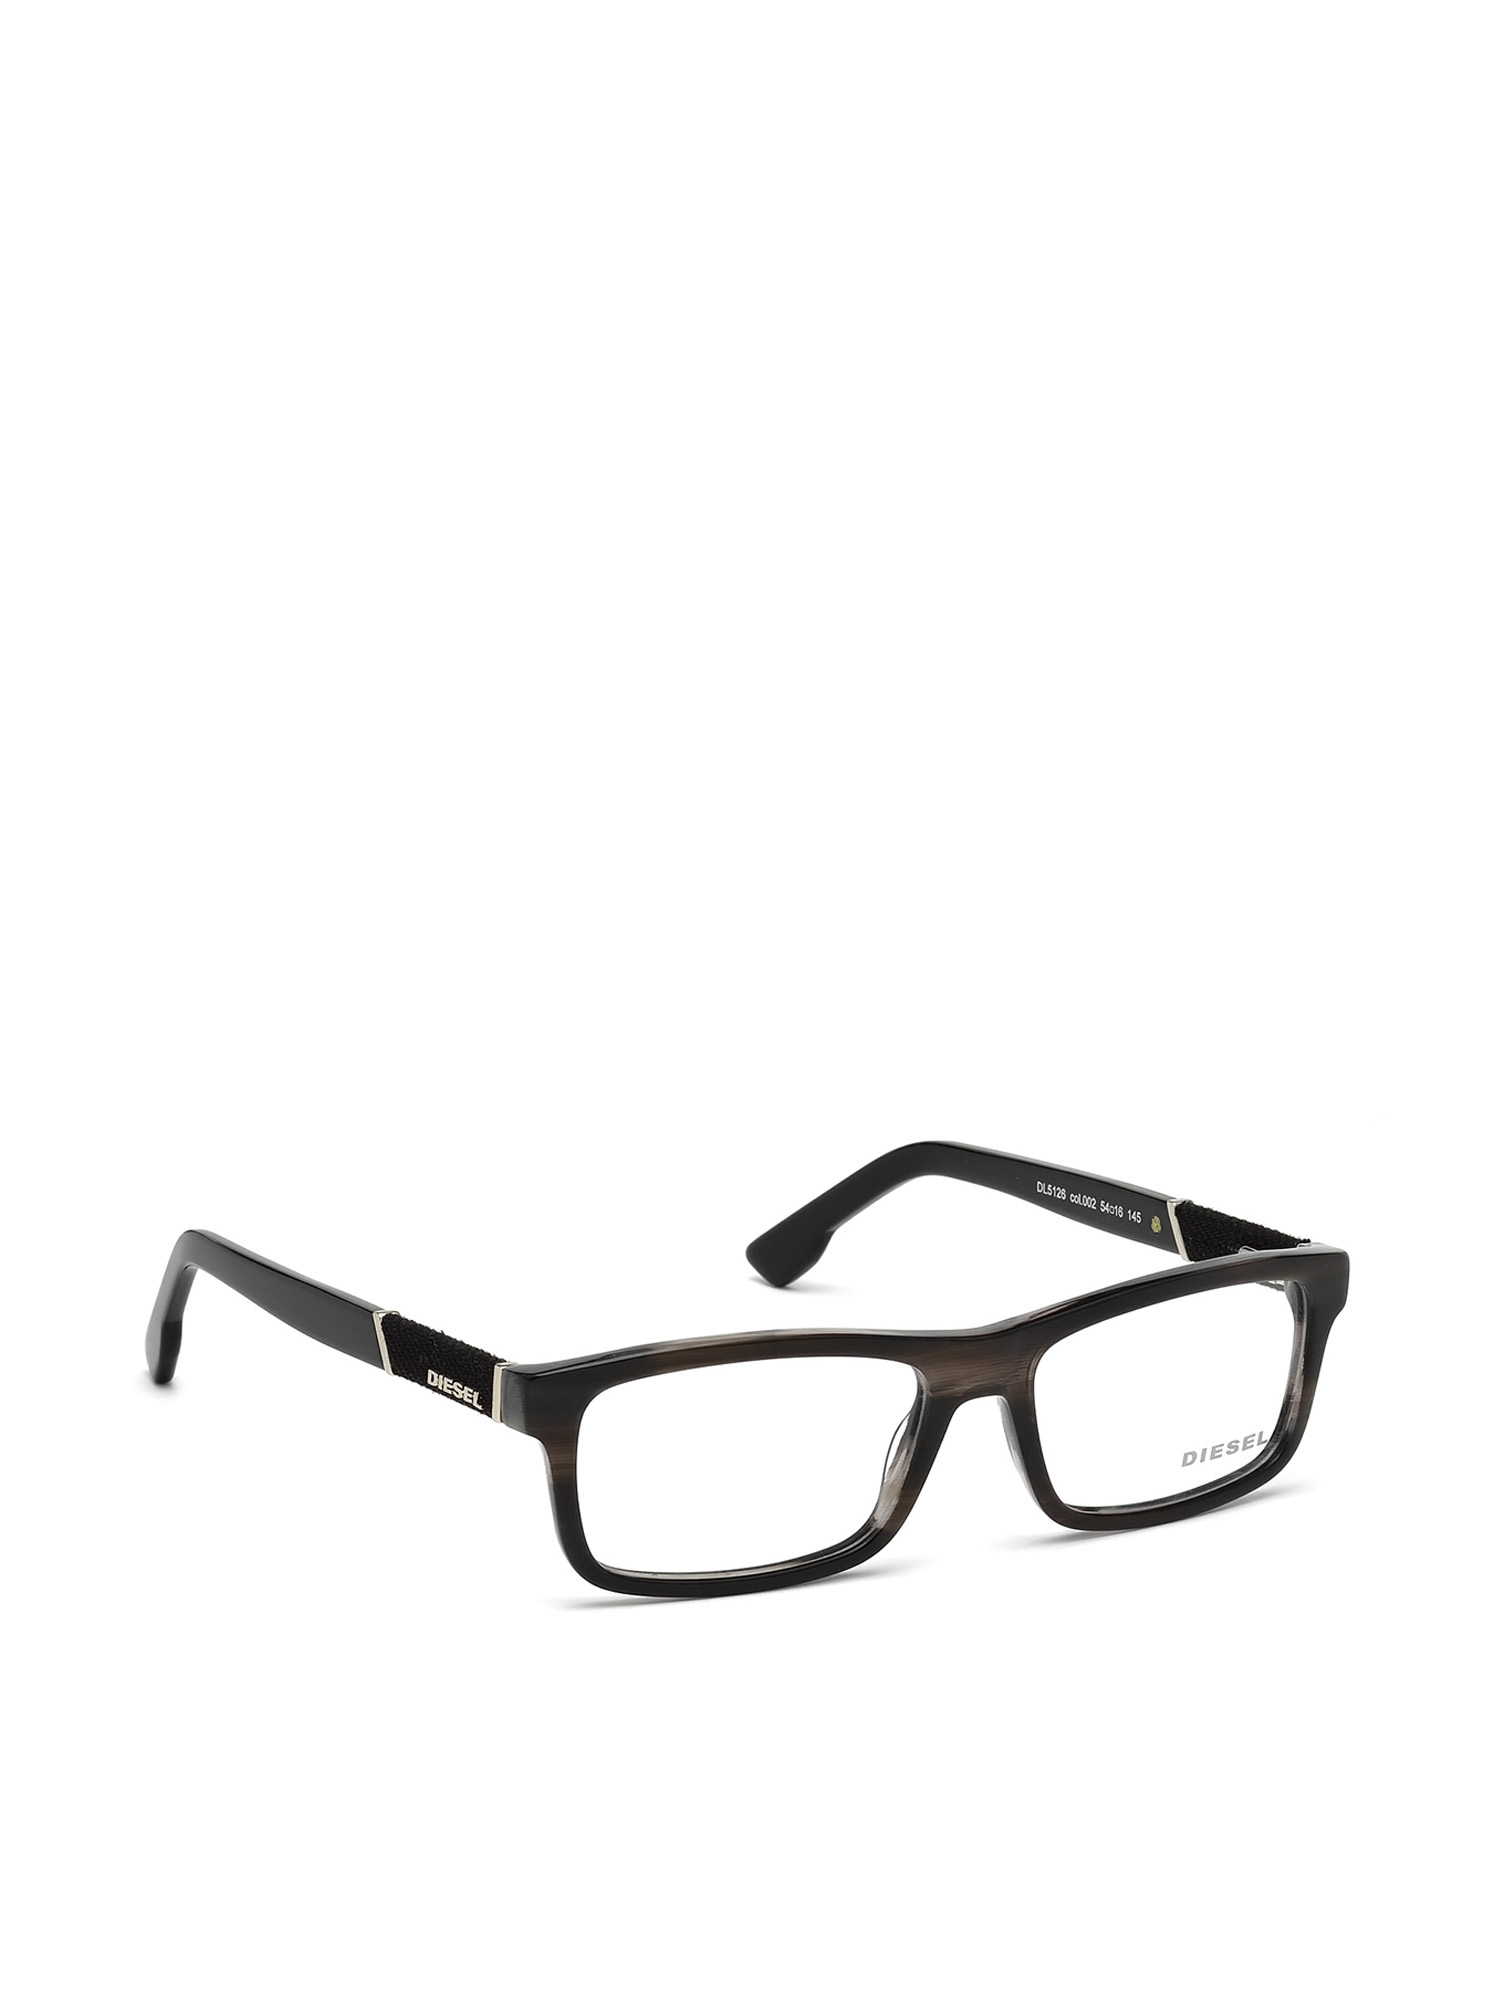 Diesel leesbril van Accessoires Zonnebrillen & Eyewear Leesbrillen grijs rond Dl5177 002 0,25 tot 3,50 mat zwart 